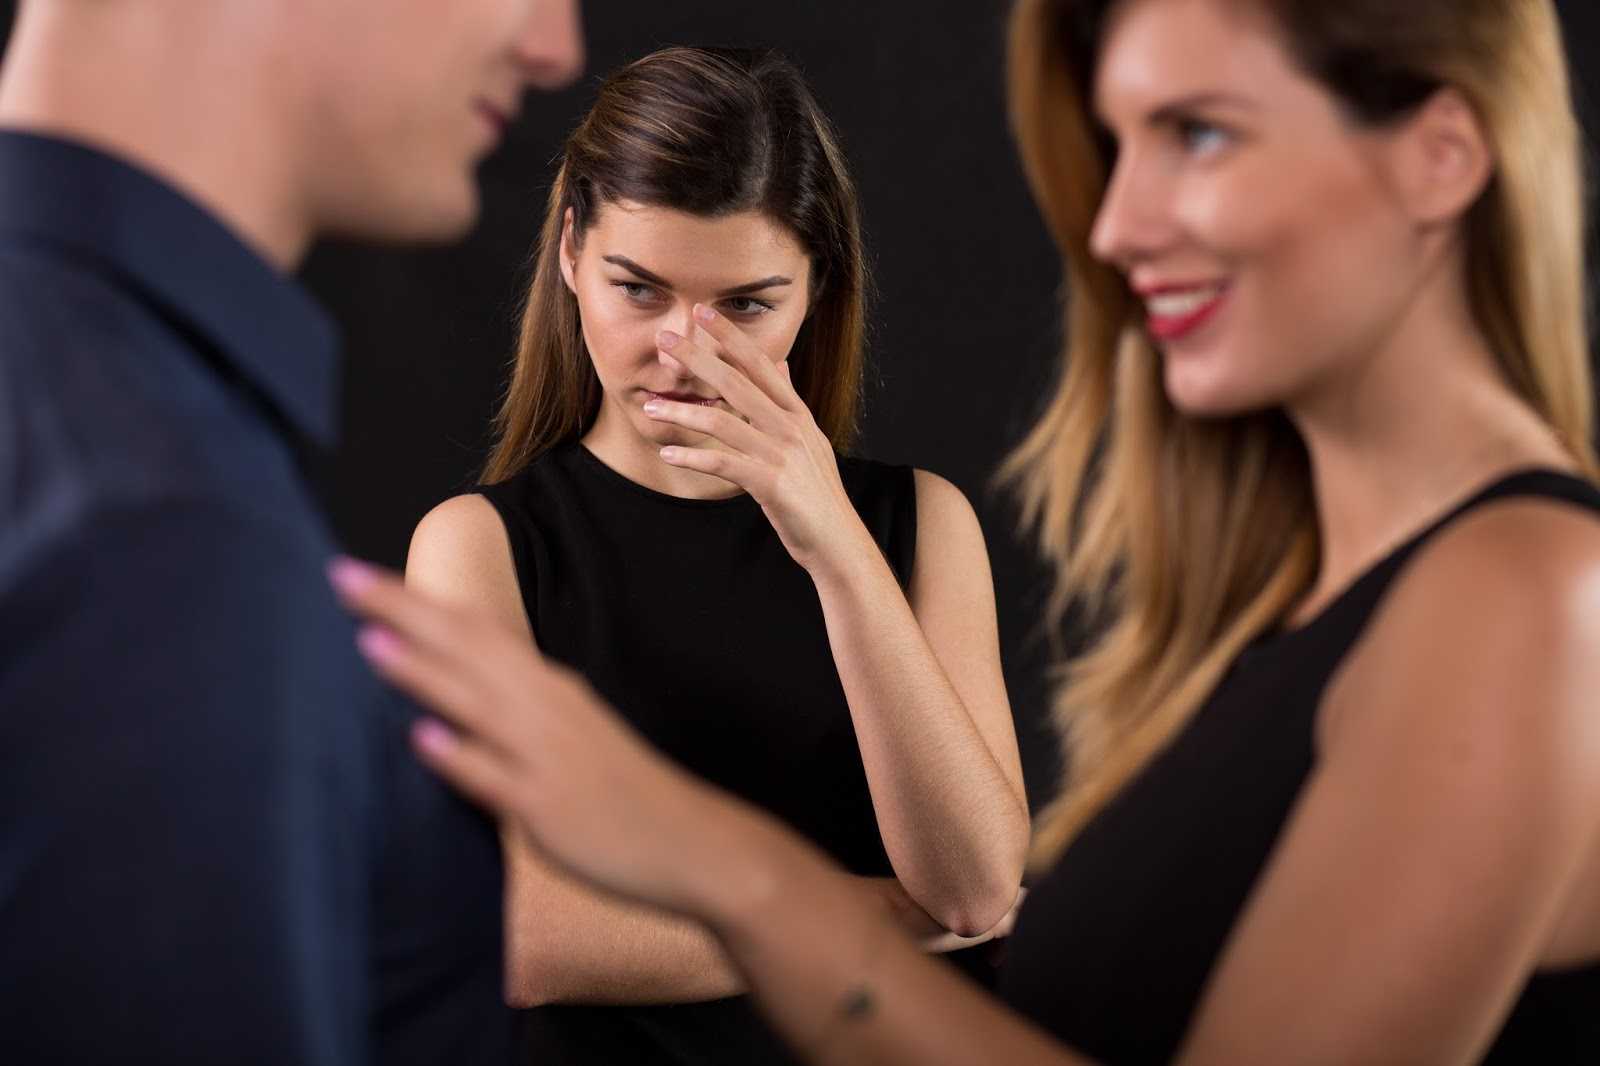 Страх перед серьезными отношениями у мужчин и женщин: почему, как побороть фобию